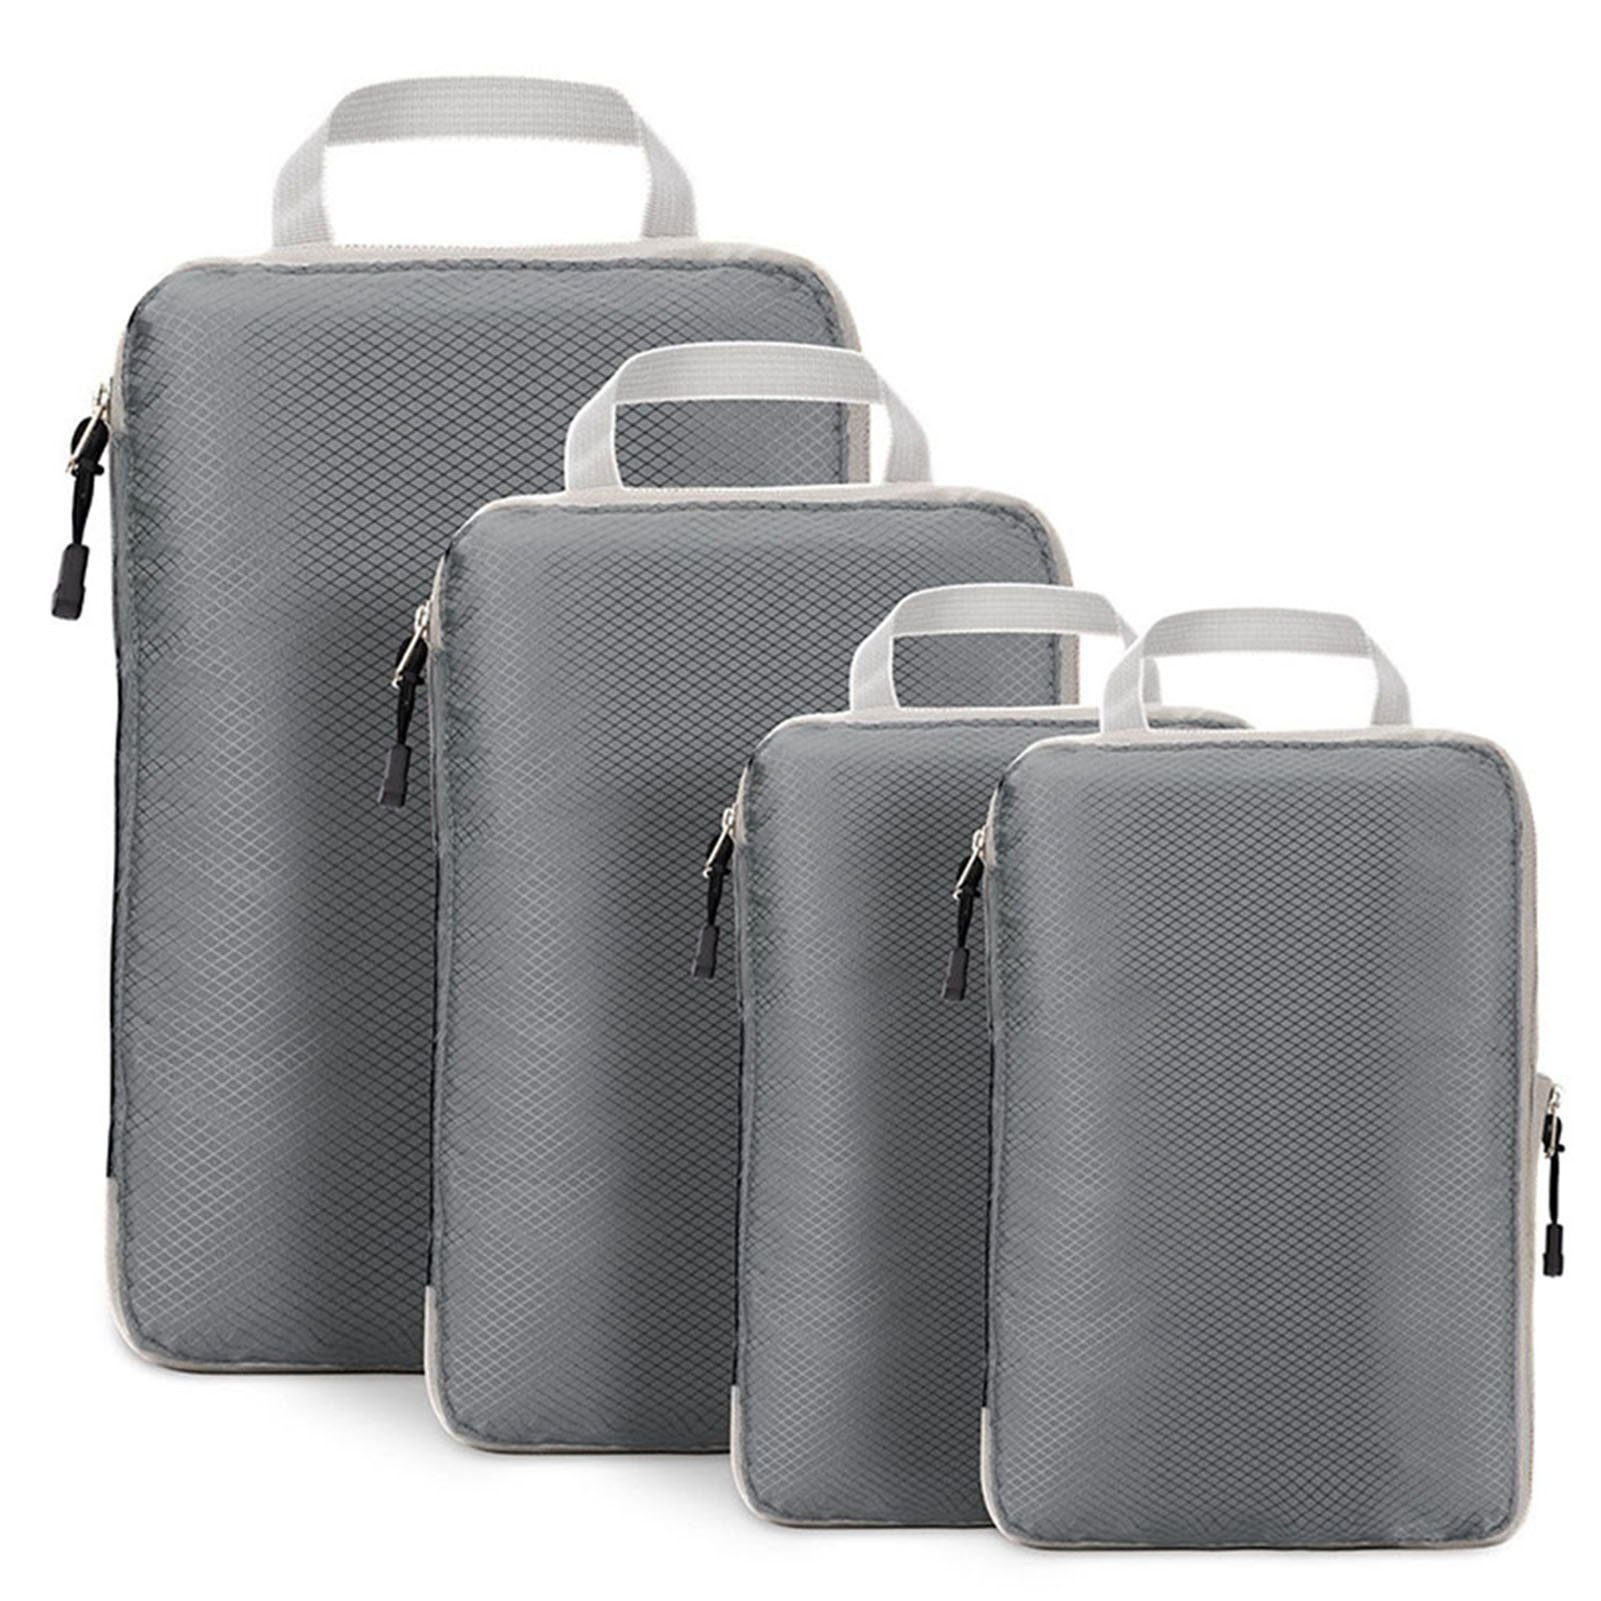 Tragbare black Blusmart Kofferset Kleider-Reisepaket, Wasserdichte Vierteiliges